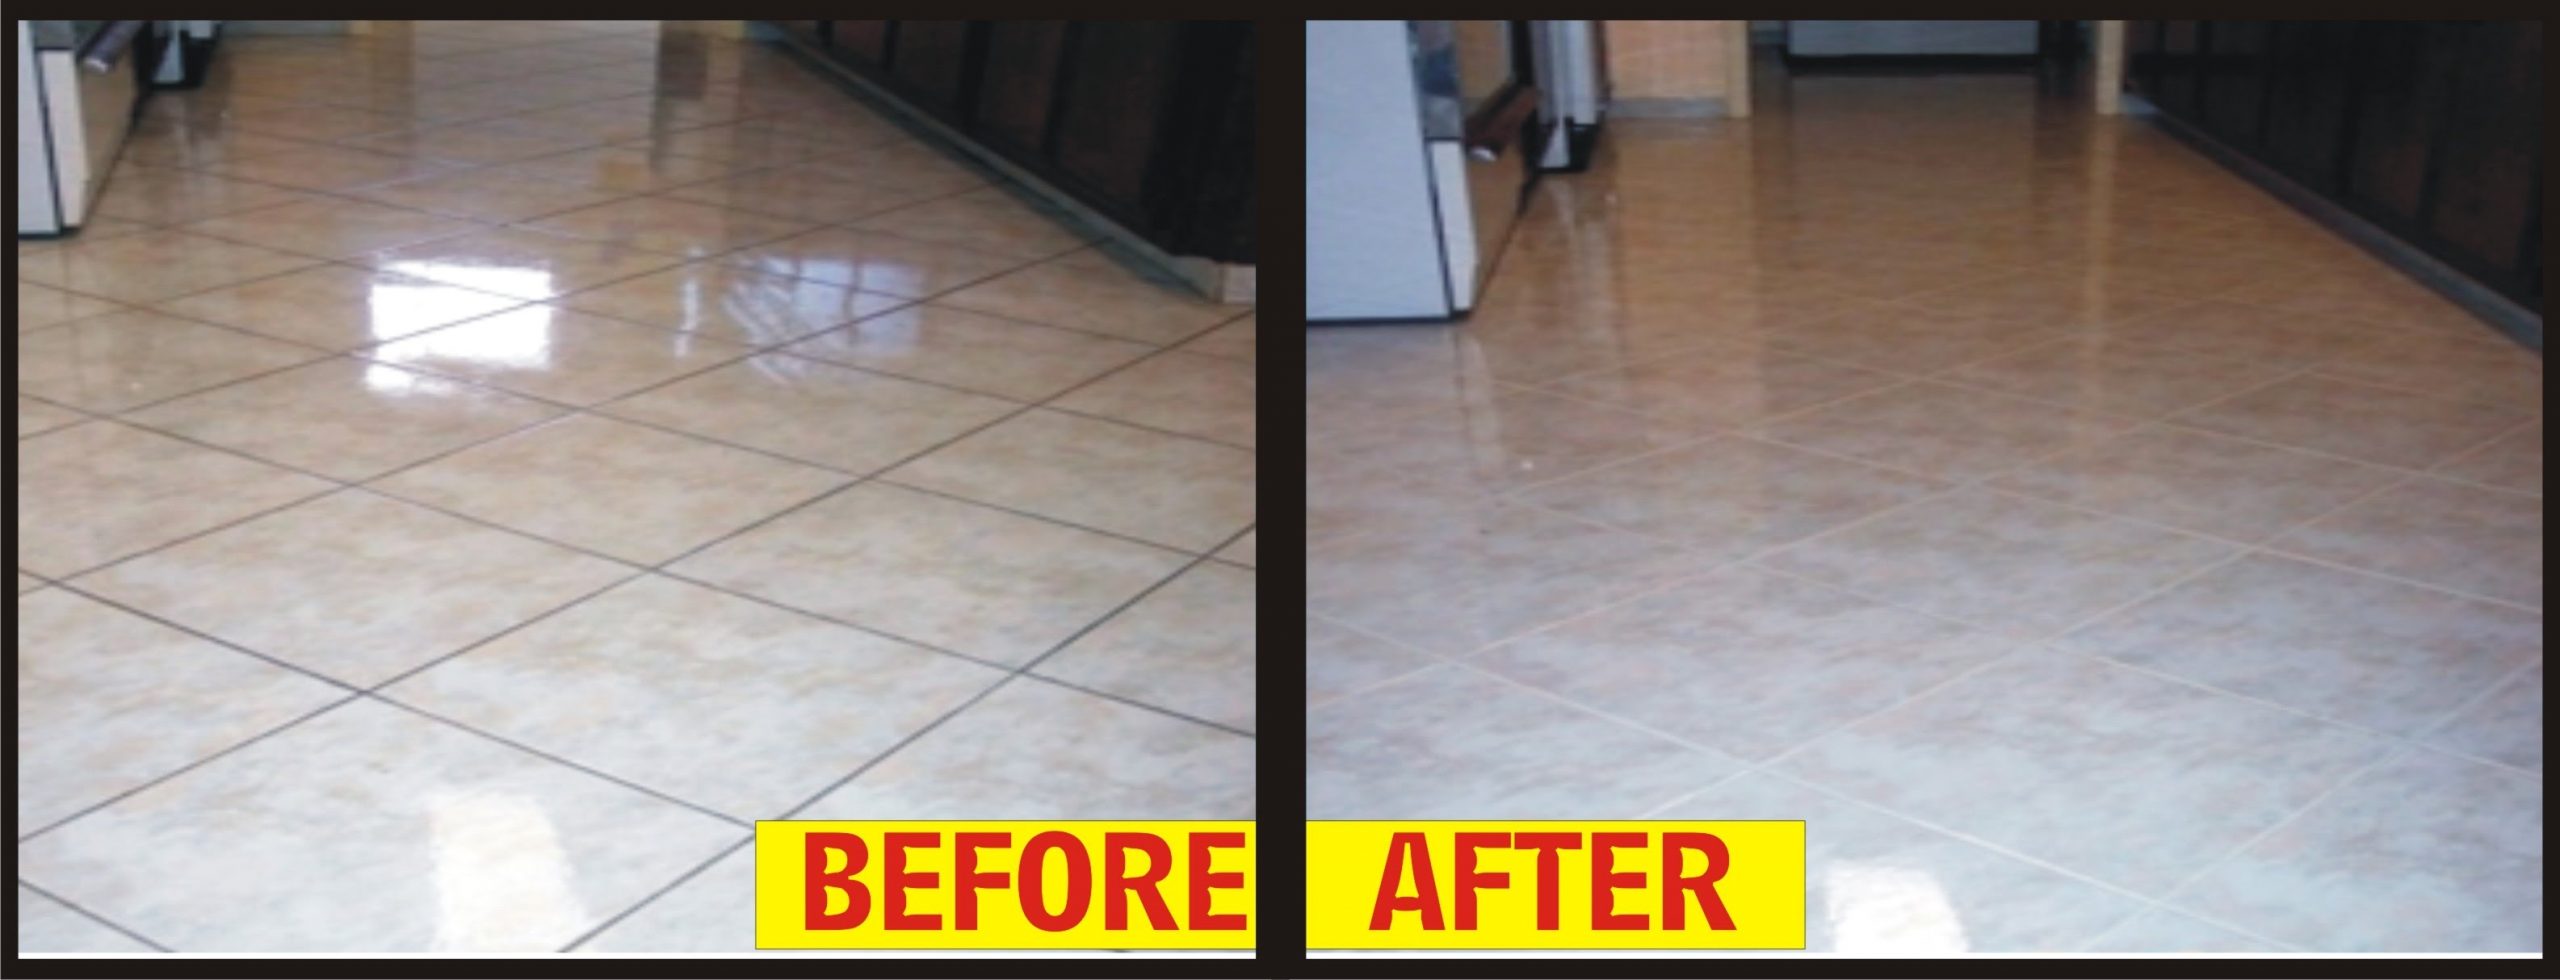 Clean tile Floors